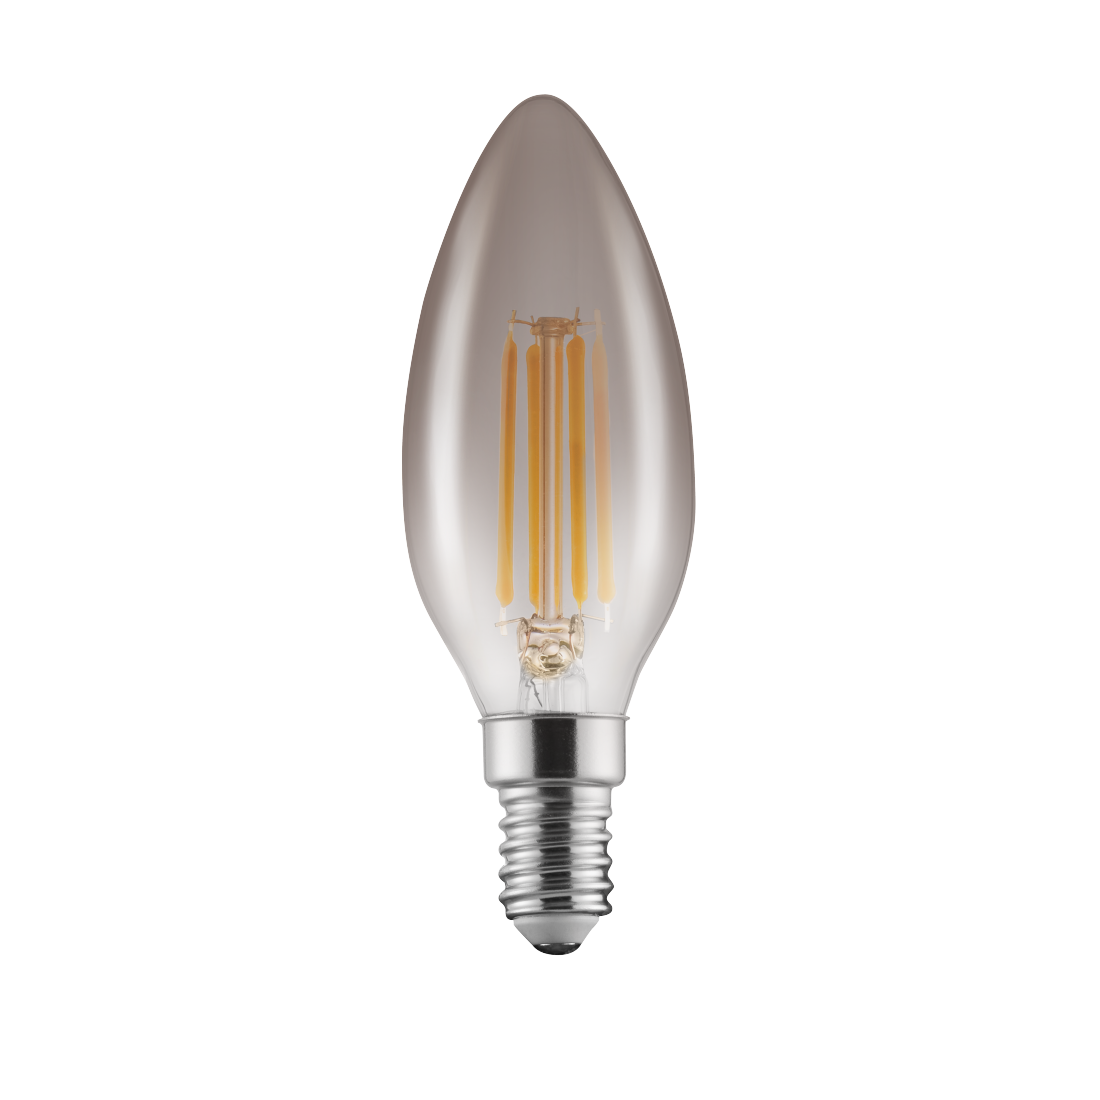 abx Druckfähige Abbildung - Xavax, LED-Filament, E14, 280lm 4W, Vintage-Lampe Kerze, dimmbar, Warmweiß